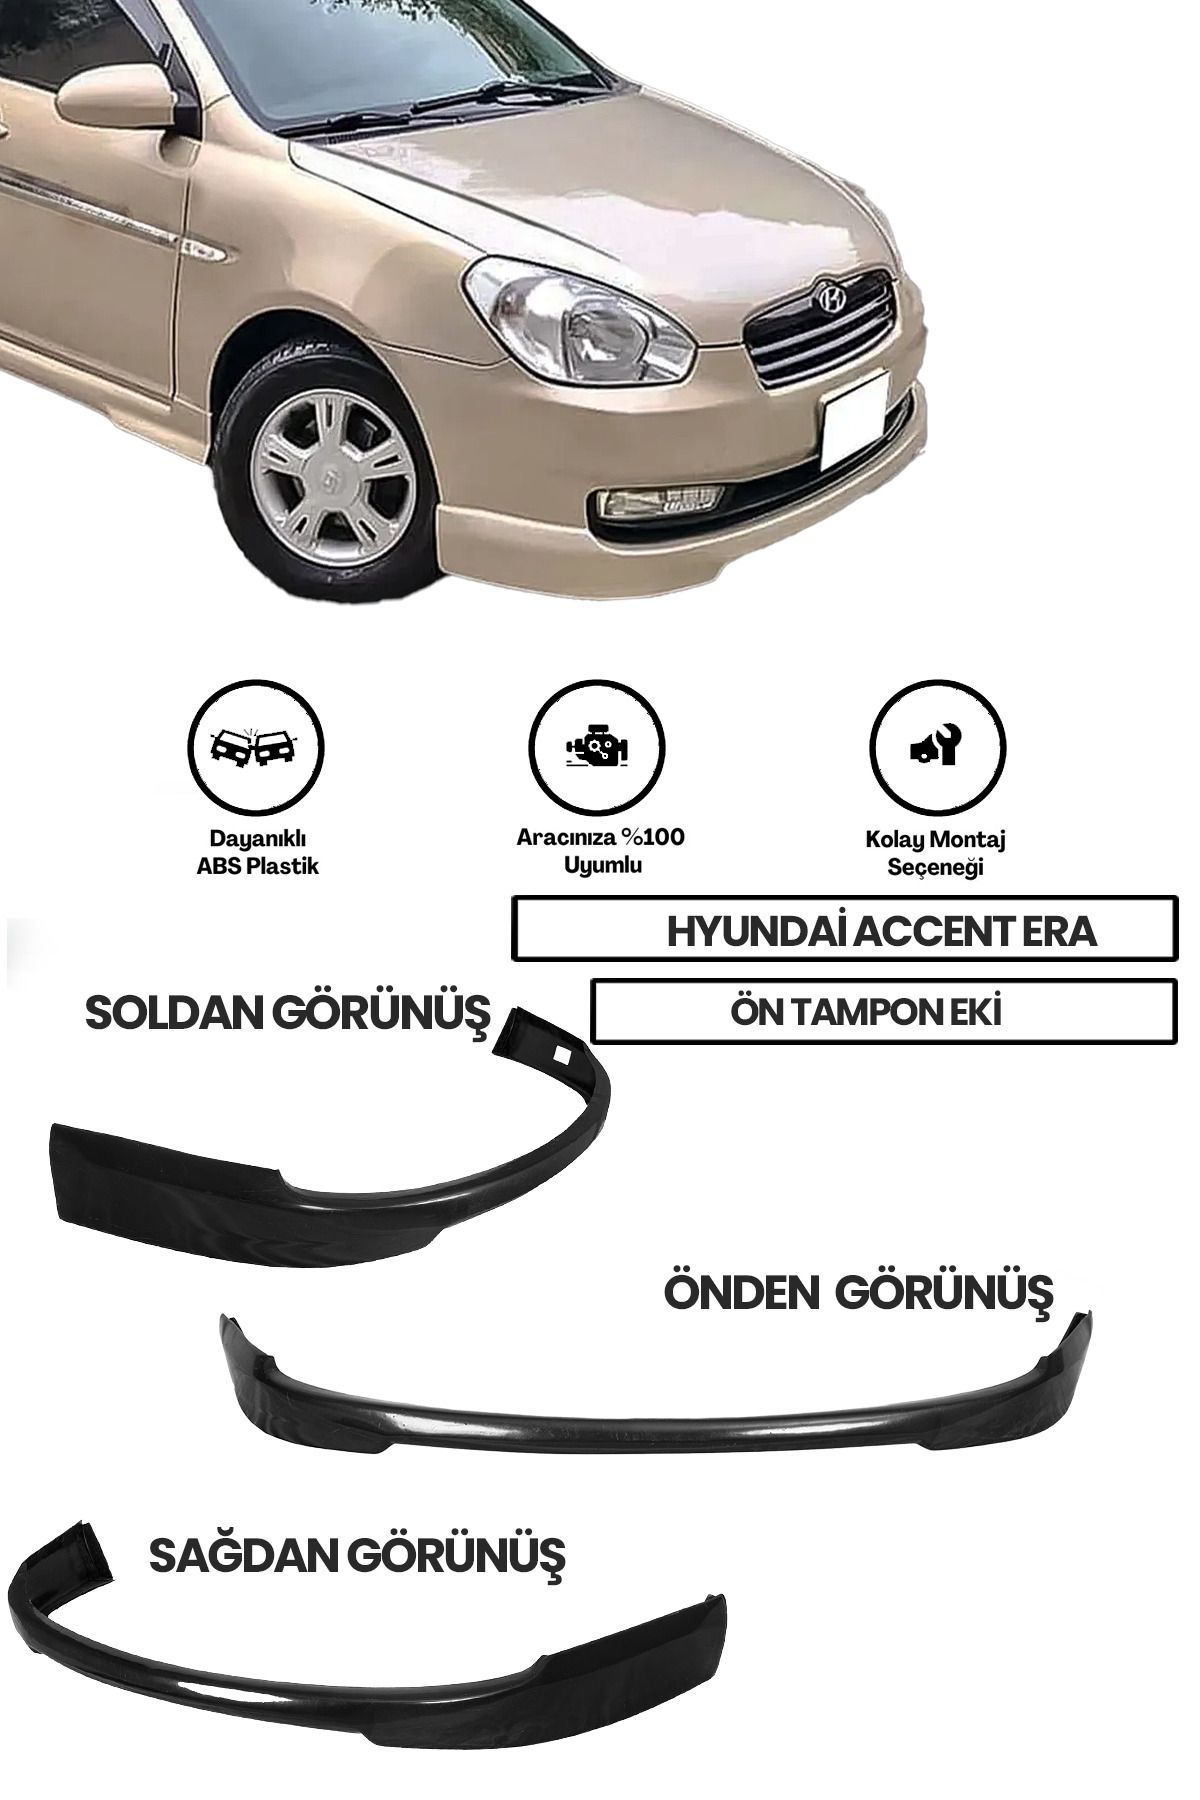 Hyundai Accent Era Ön Ek (plastik)